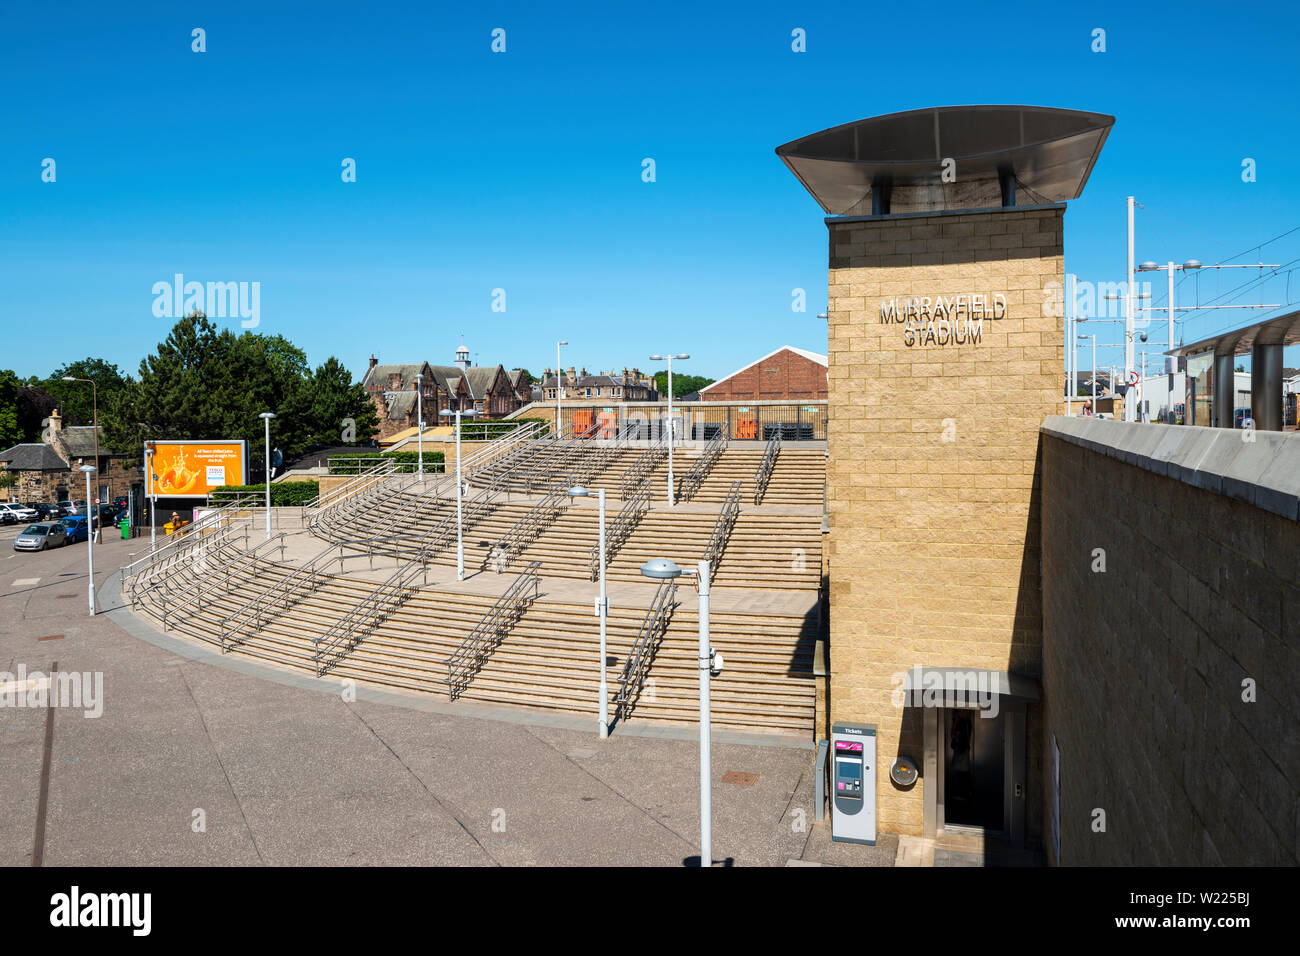 Schritt, der dem Murrayfield Stadium Straßenbahnhaltestelle in Murrayfield, Edinburgh, Schottland, Großbritannien Stockfoto